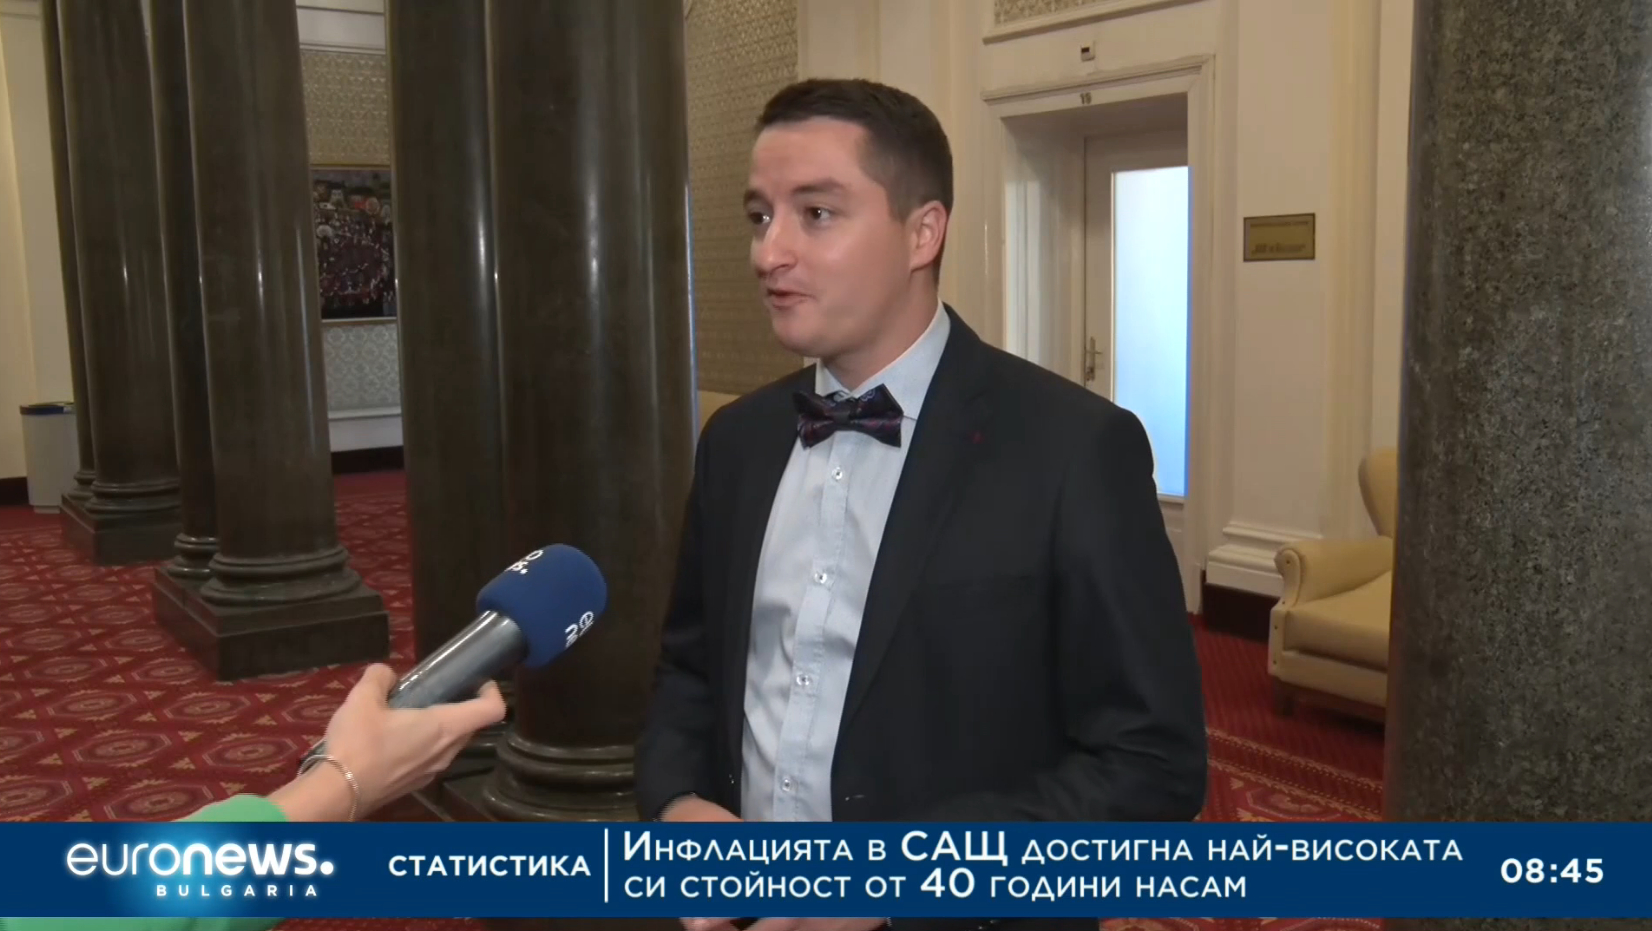 Явор Божанков, БСП: Ние сме за орязване на правомощията на главния прокурор, който за пореден път се опита да "изпере" Борисов